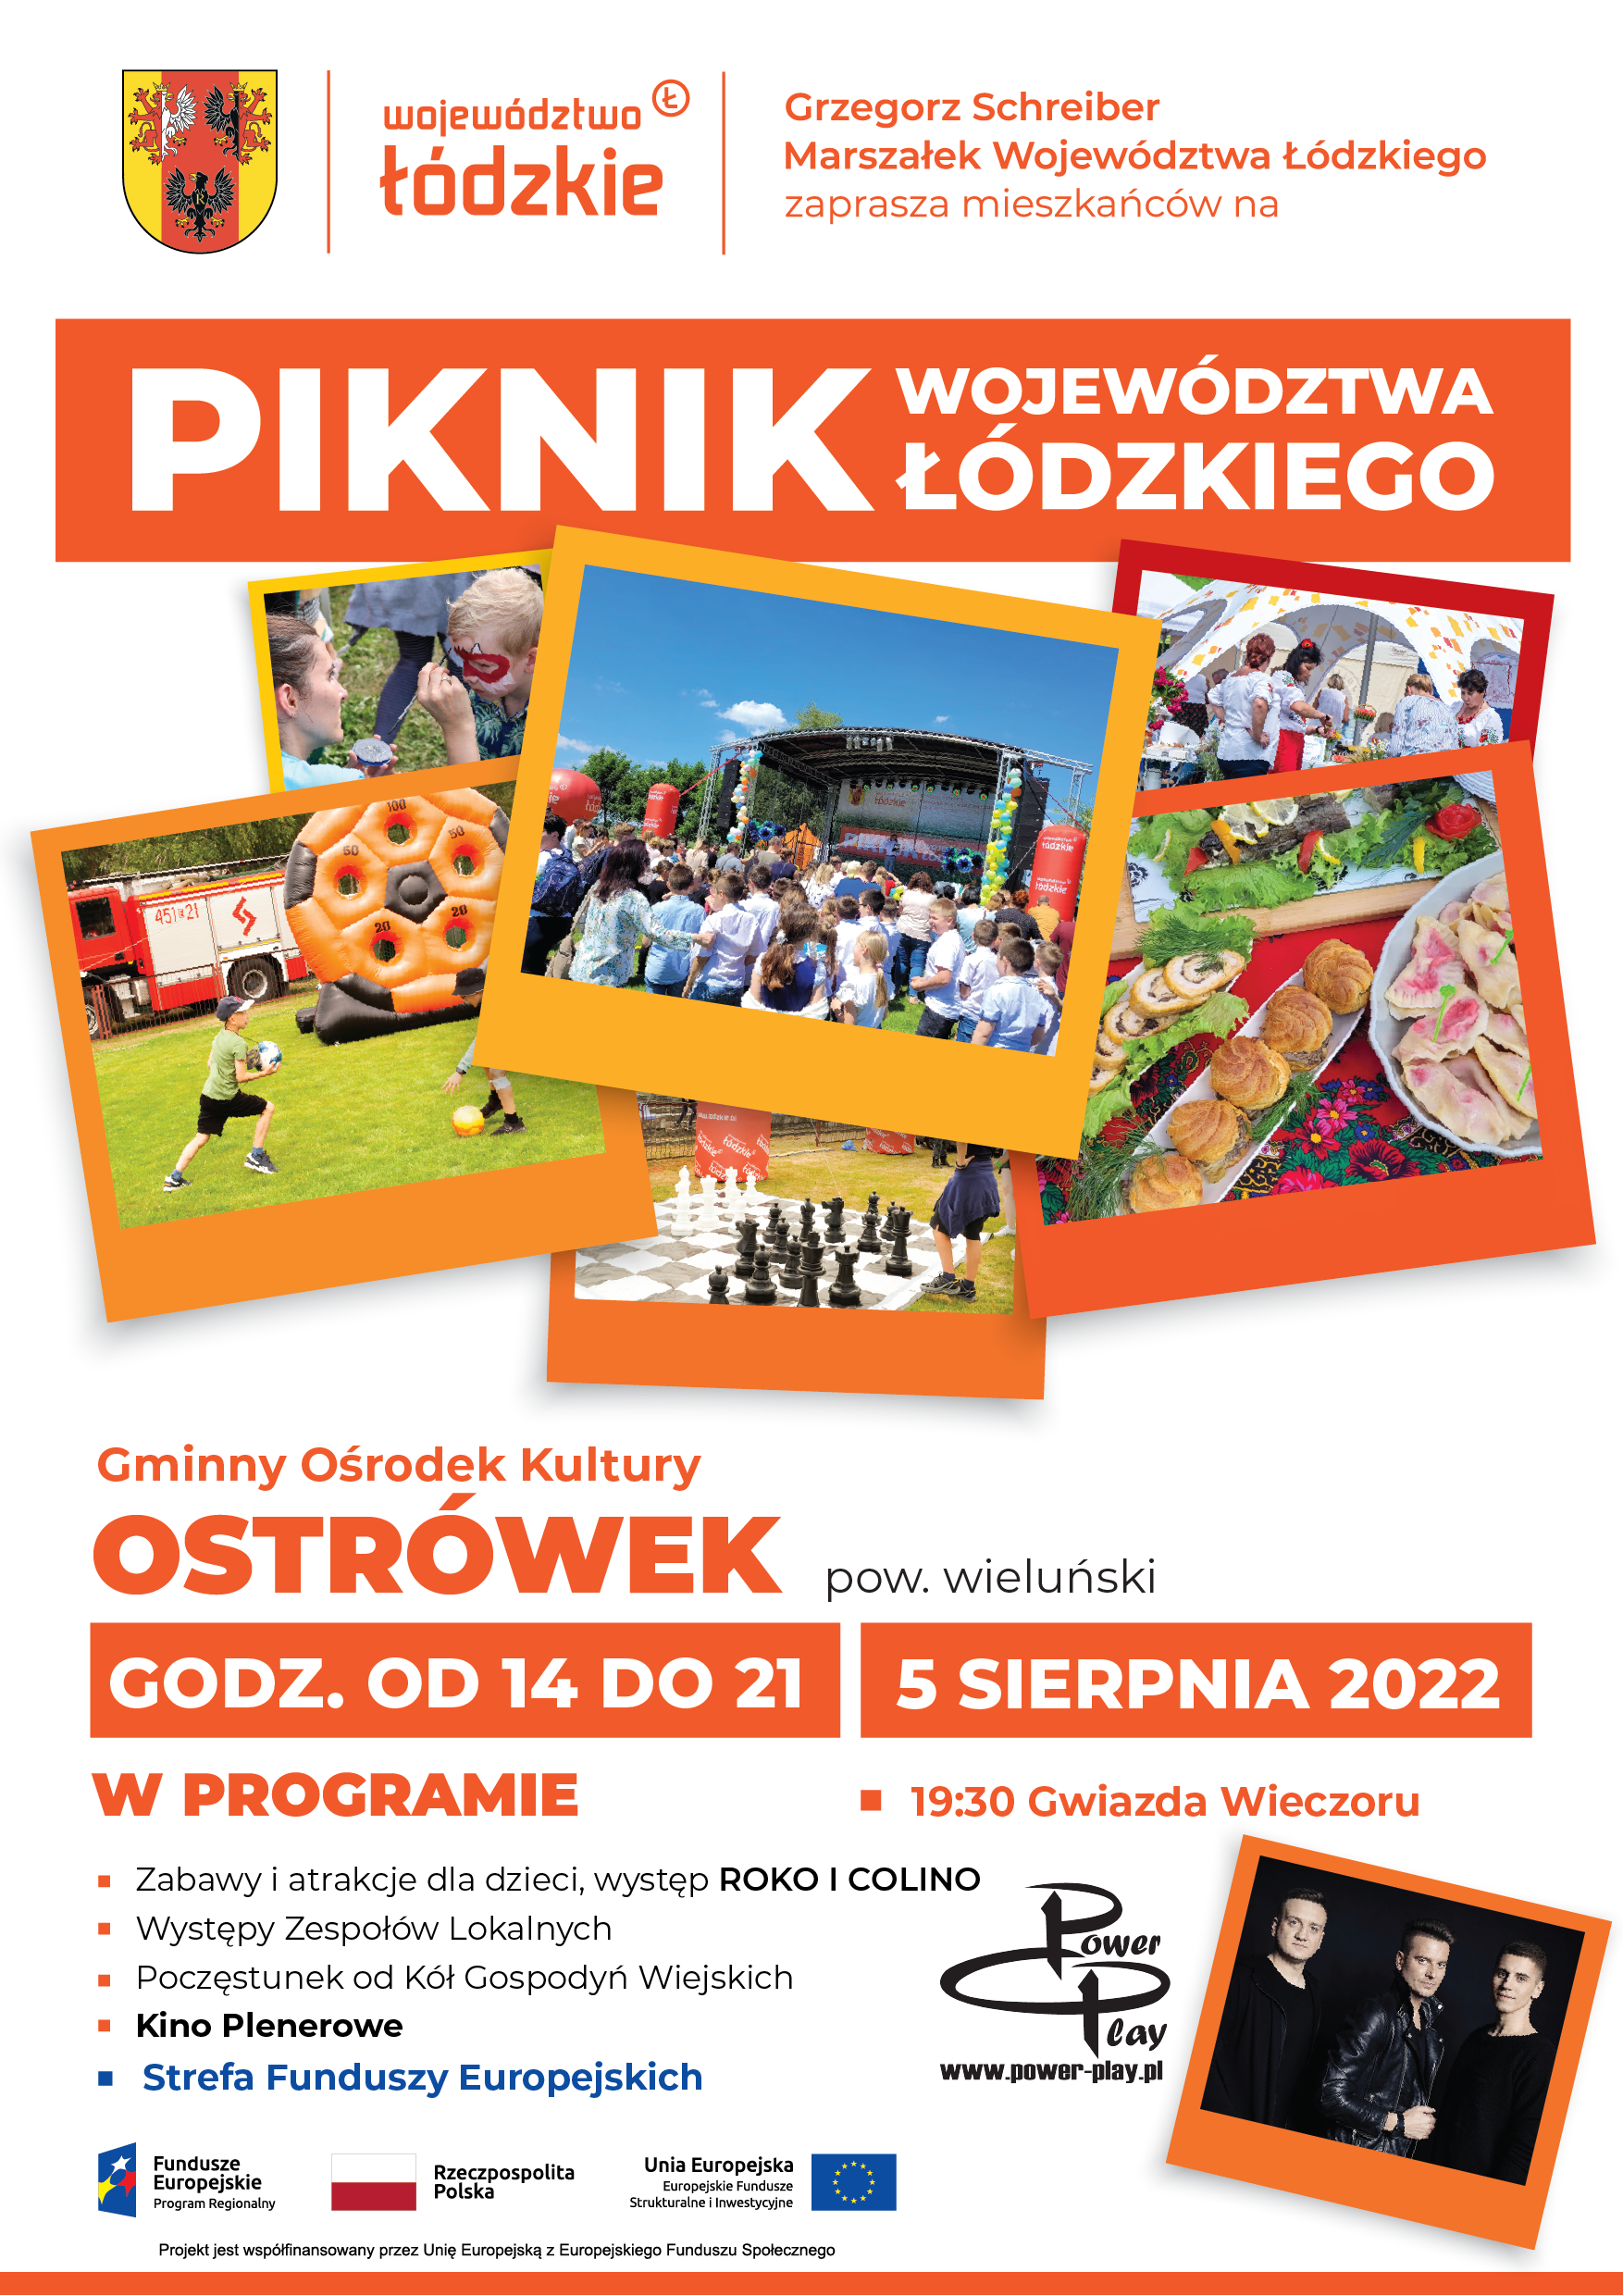 plakat Pikniku w Ostrówku 5 sierpnia 2022 r.